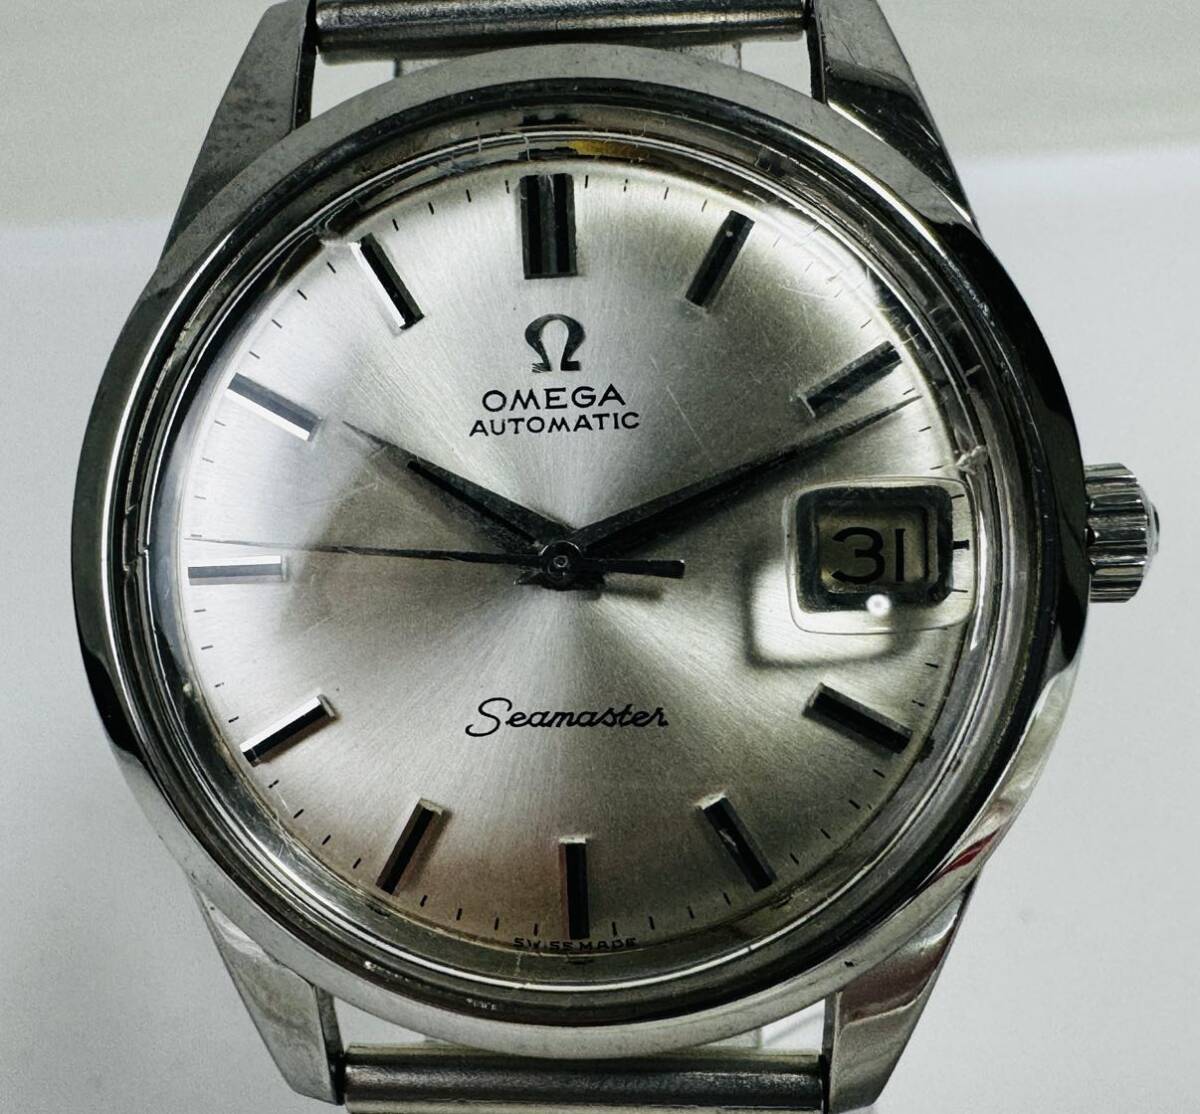 ◇ OMEGA オメガ シーマスター デイト 自動巻き メンズ腕時計 /261639/319-33